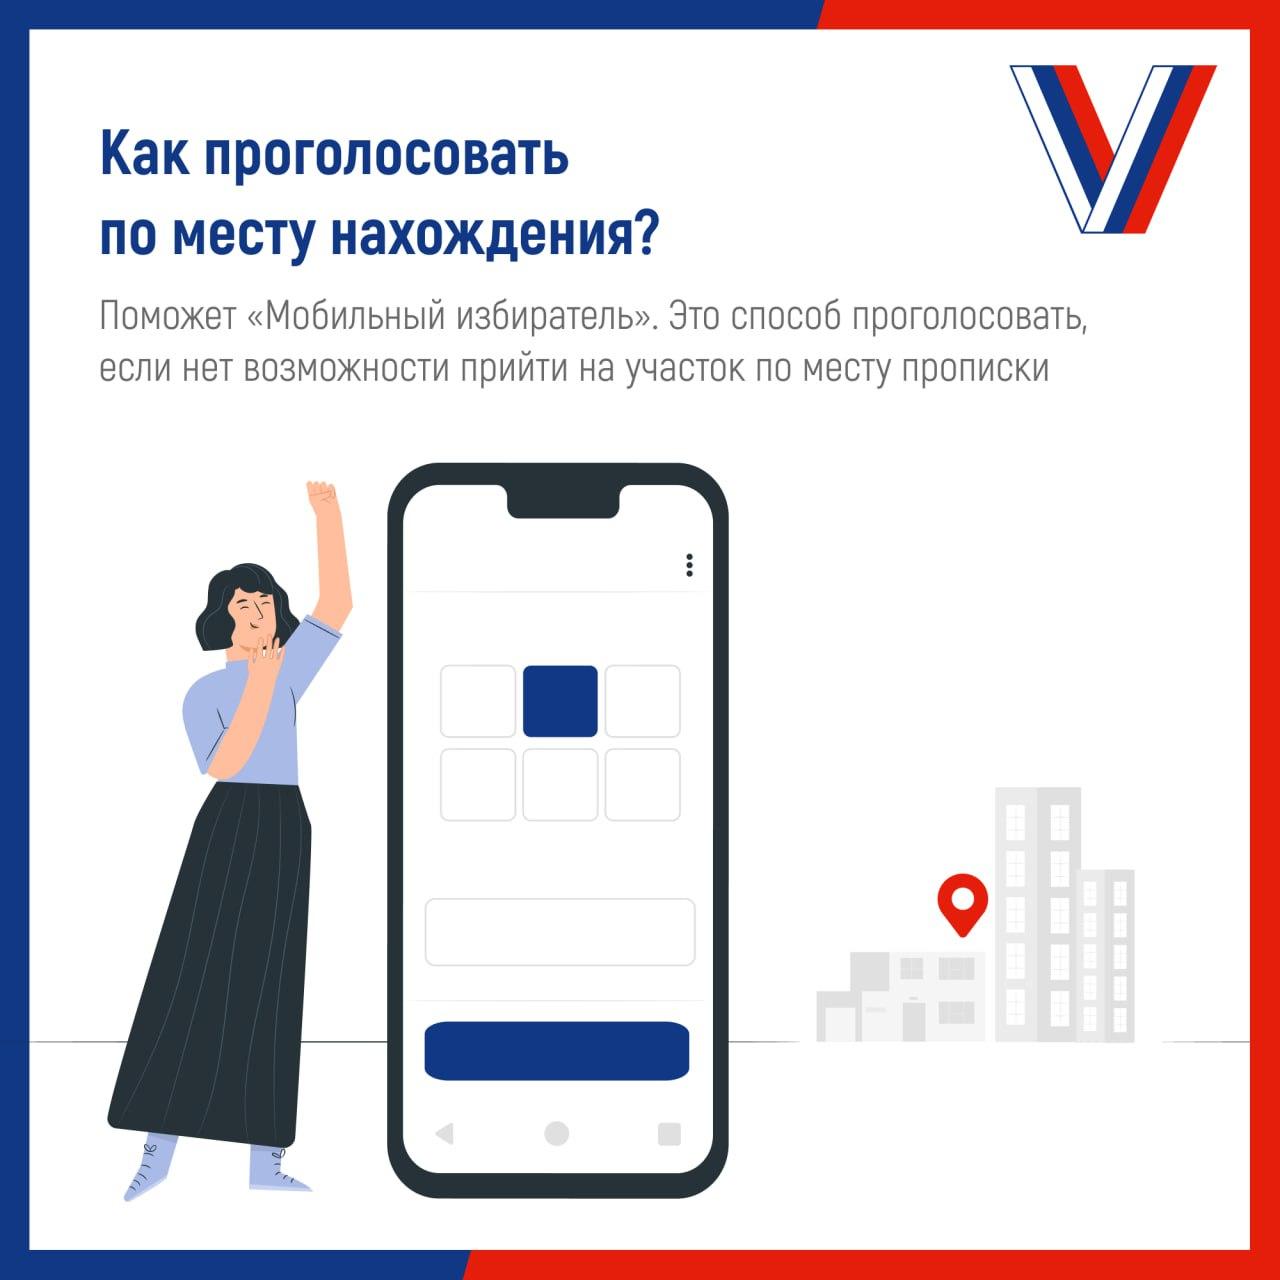 Жители Ульяновской области смогут проголосовать на любом избирательном участке.